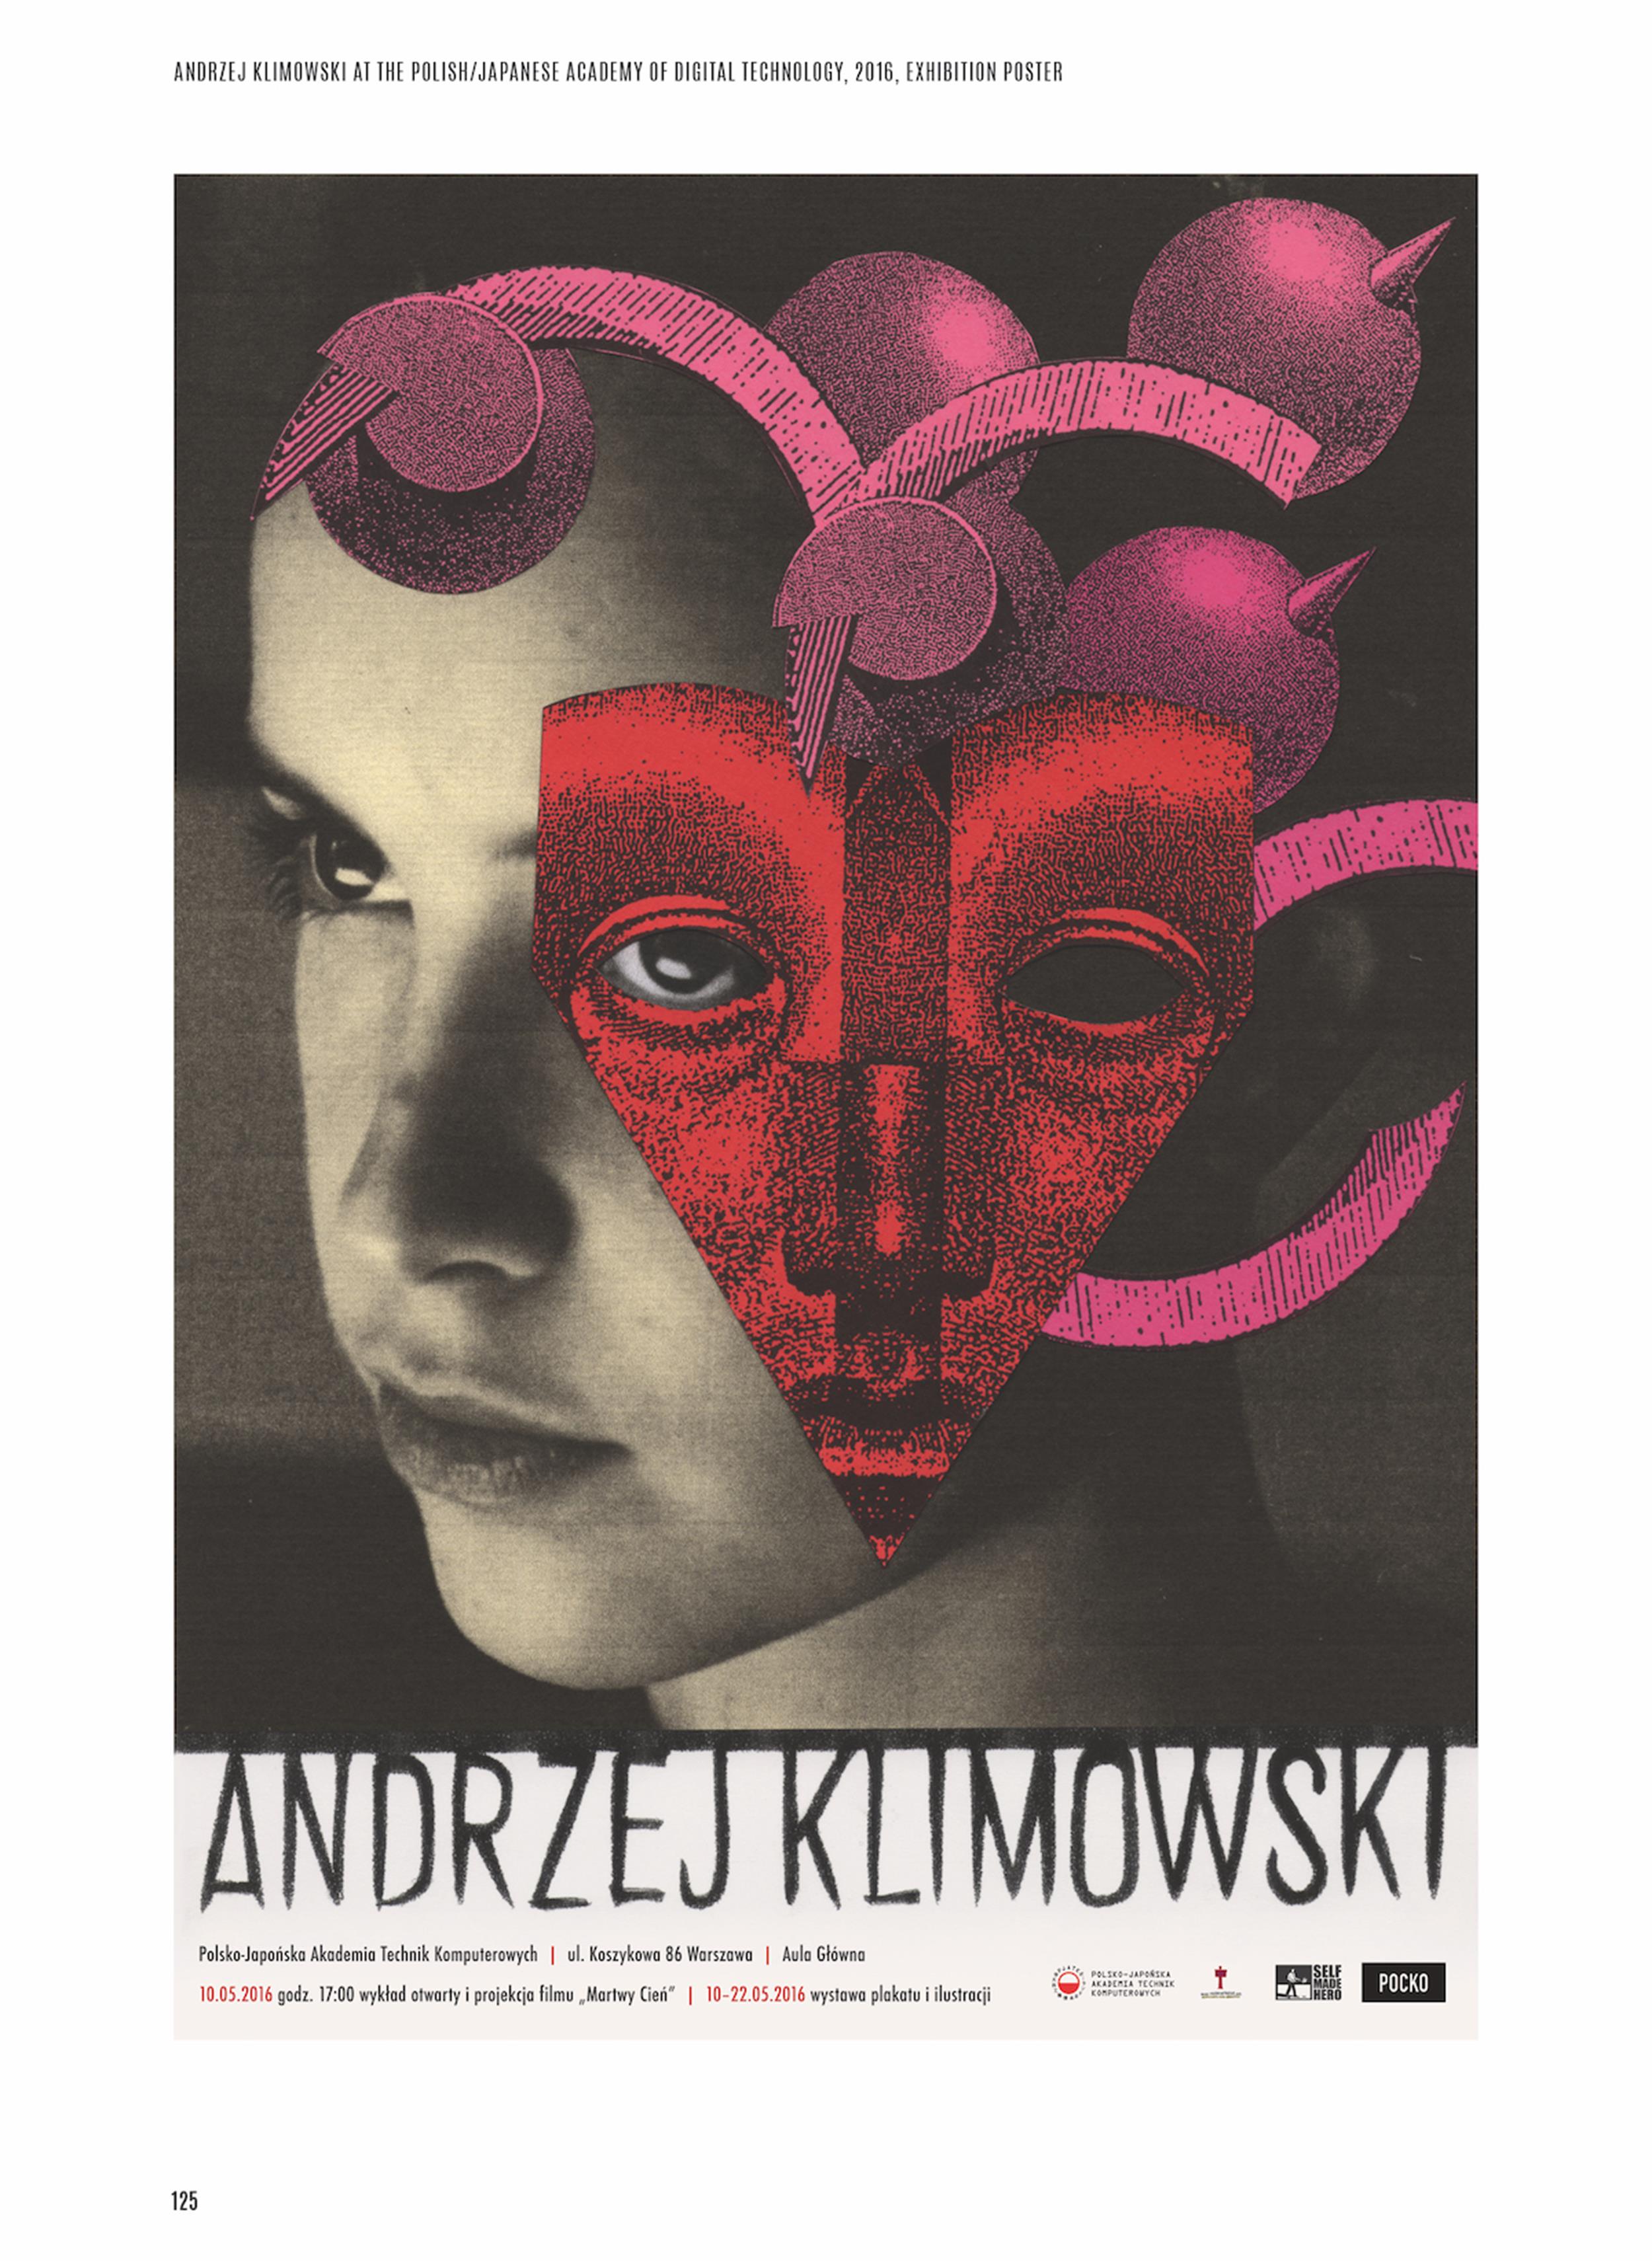 Andrzej Klimowski, plakat wystawy prac artysty w Polsko-Japońskiej Akademii Technik Komputerowych w Warszawie, 2016